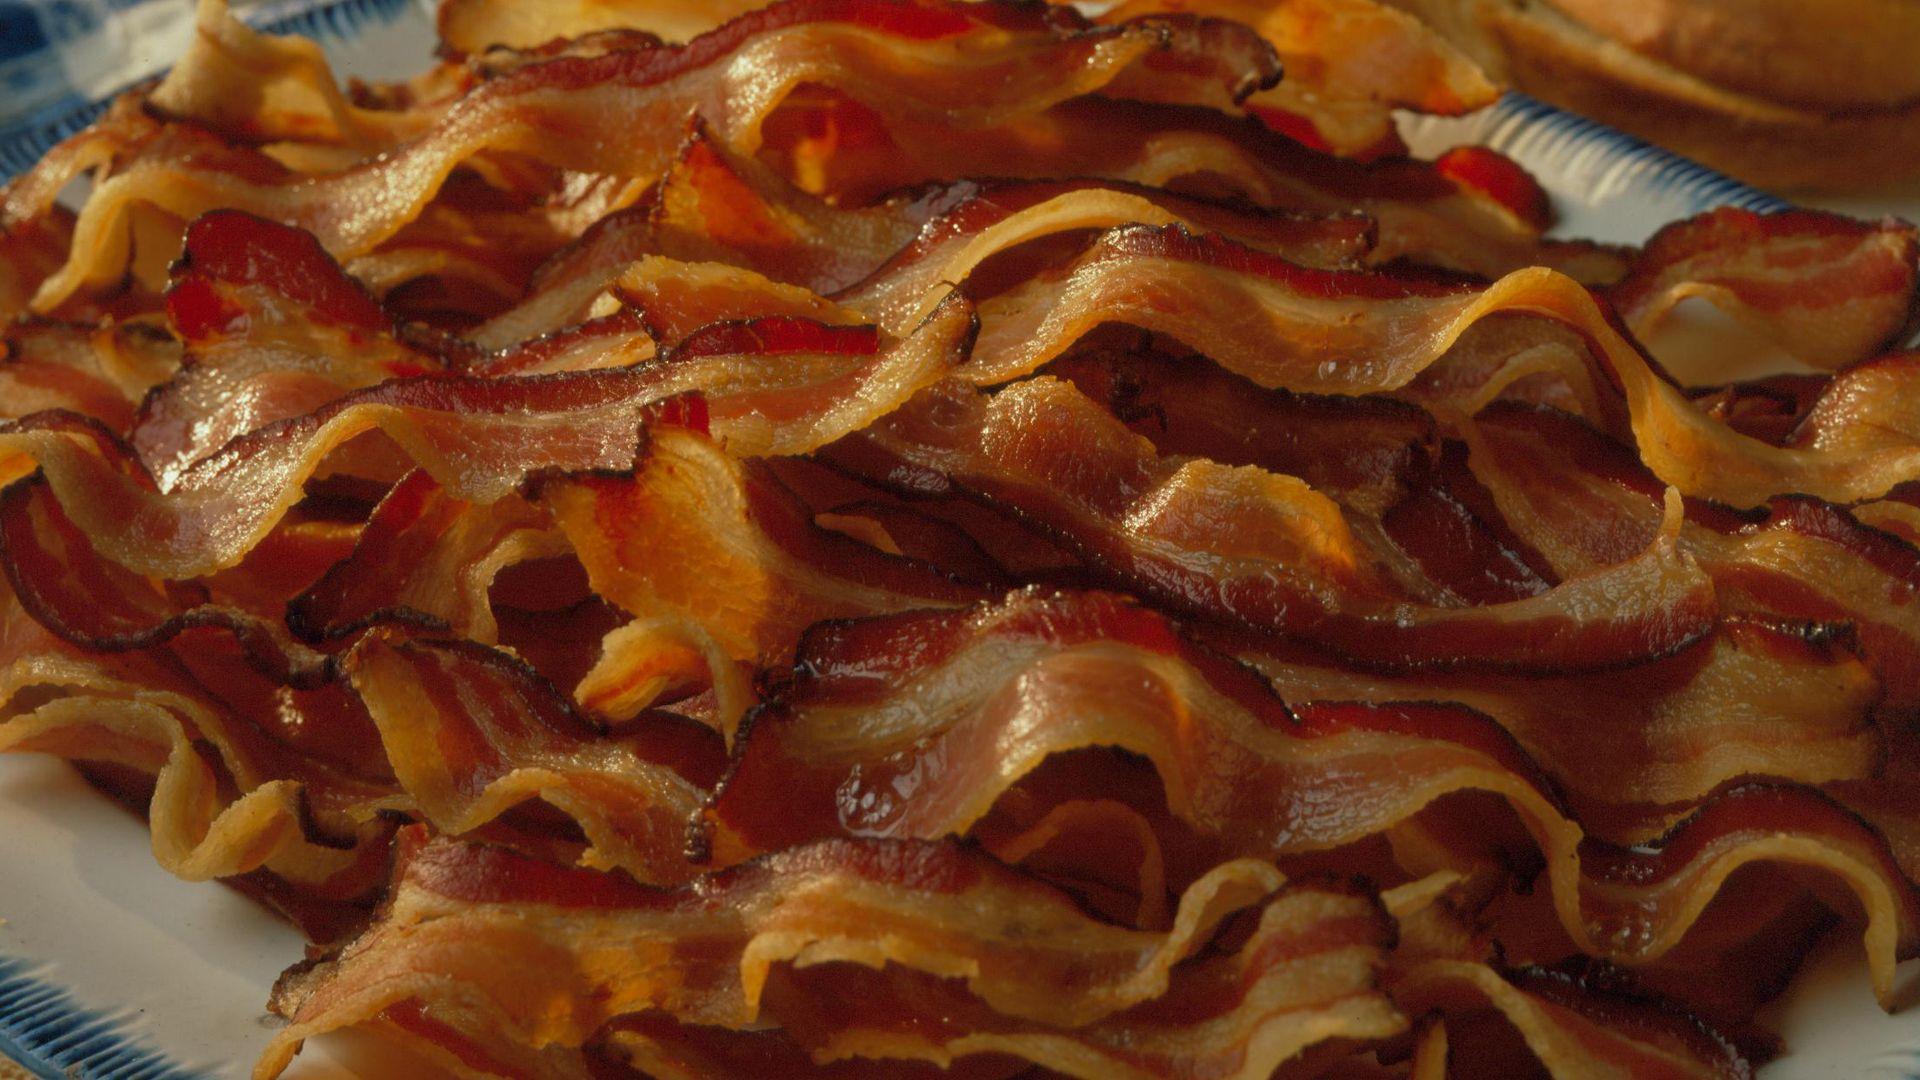 Bacon HD Wallpaper